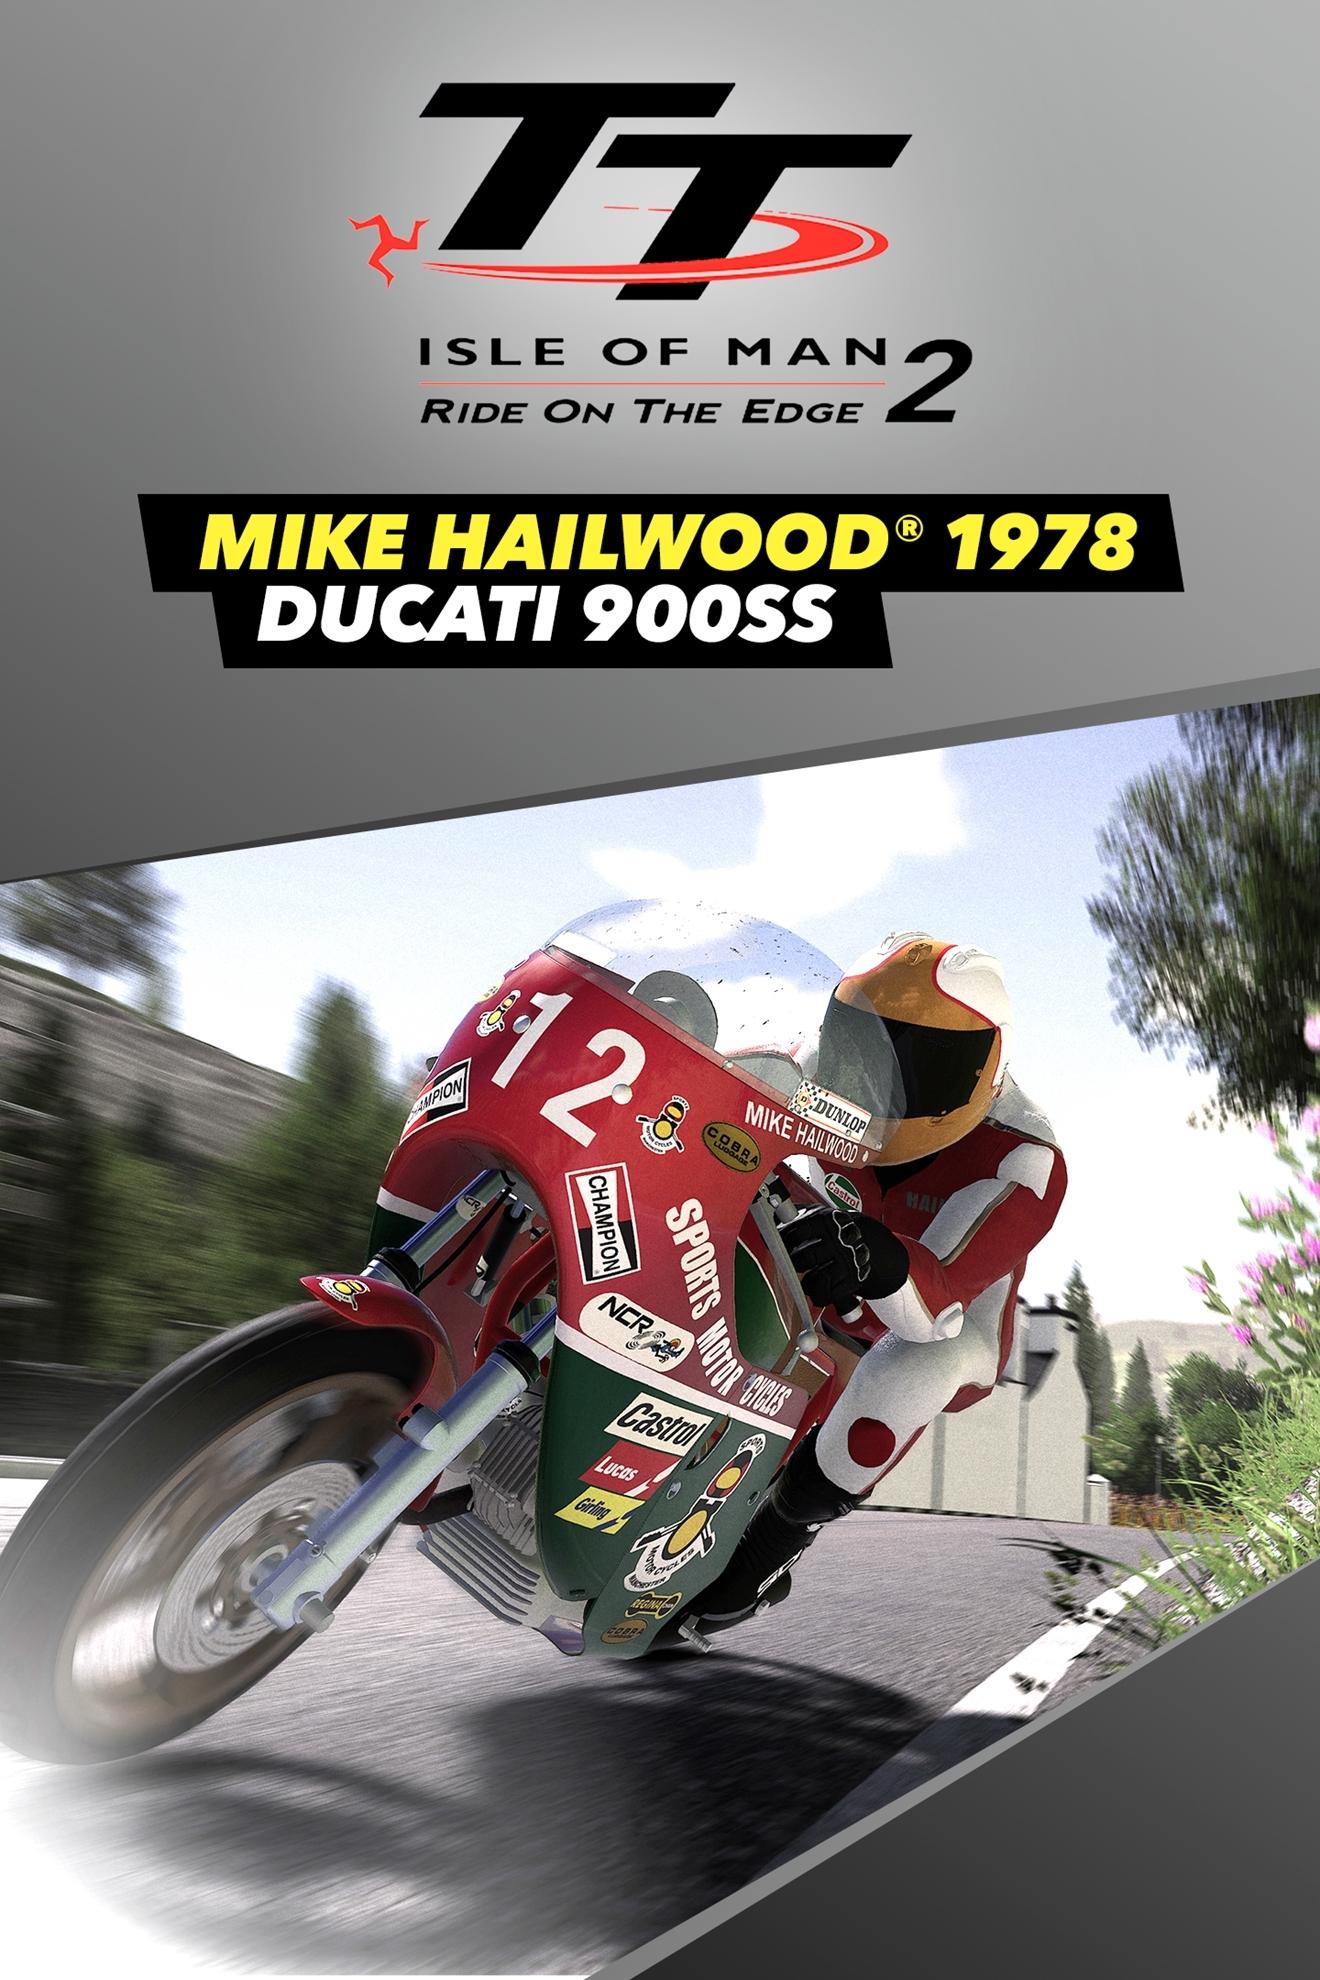 TT Isle of Man 2 Ducati 900 - Mike Hailwood 1978 | ROW (07e6974c-5306-4b06-b9f9-b55c59e8596f)